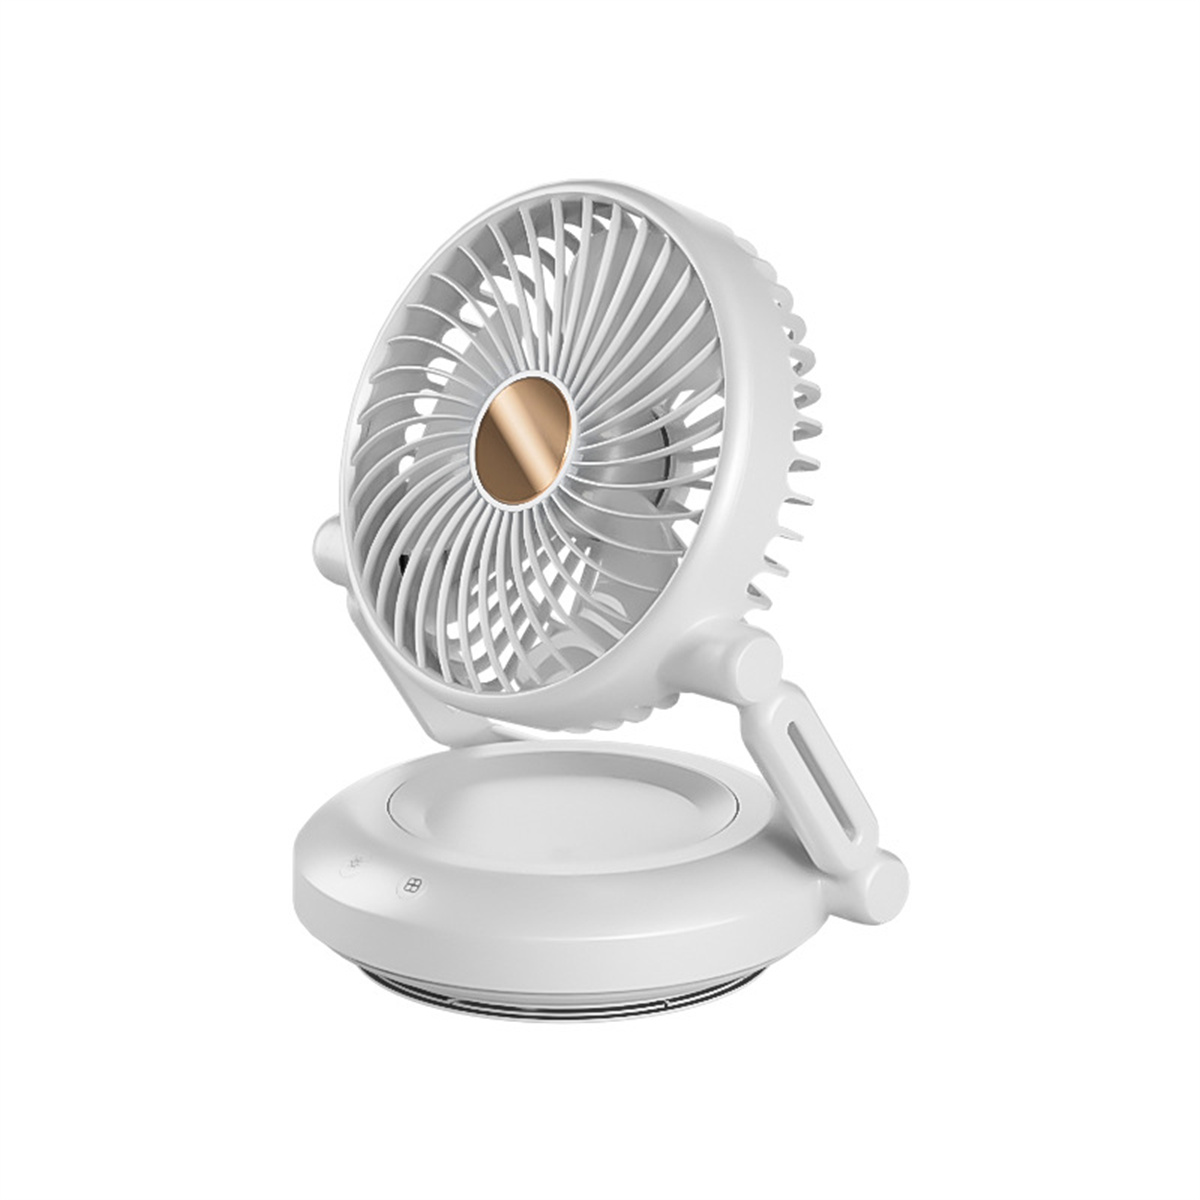 SYNTEK Elektrischer Ventilator Weiß Klein faltbar Tischlampe weiß Lüftungslüfter Ventilator Wiederaufladbar